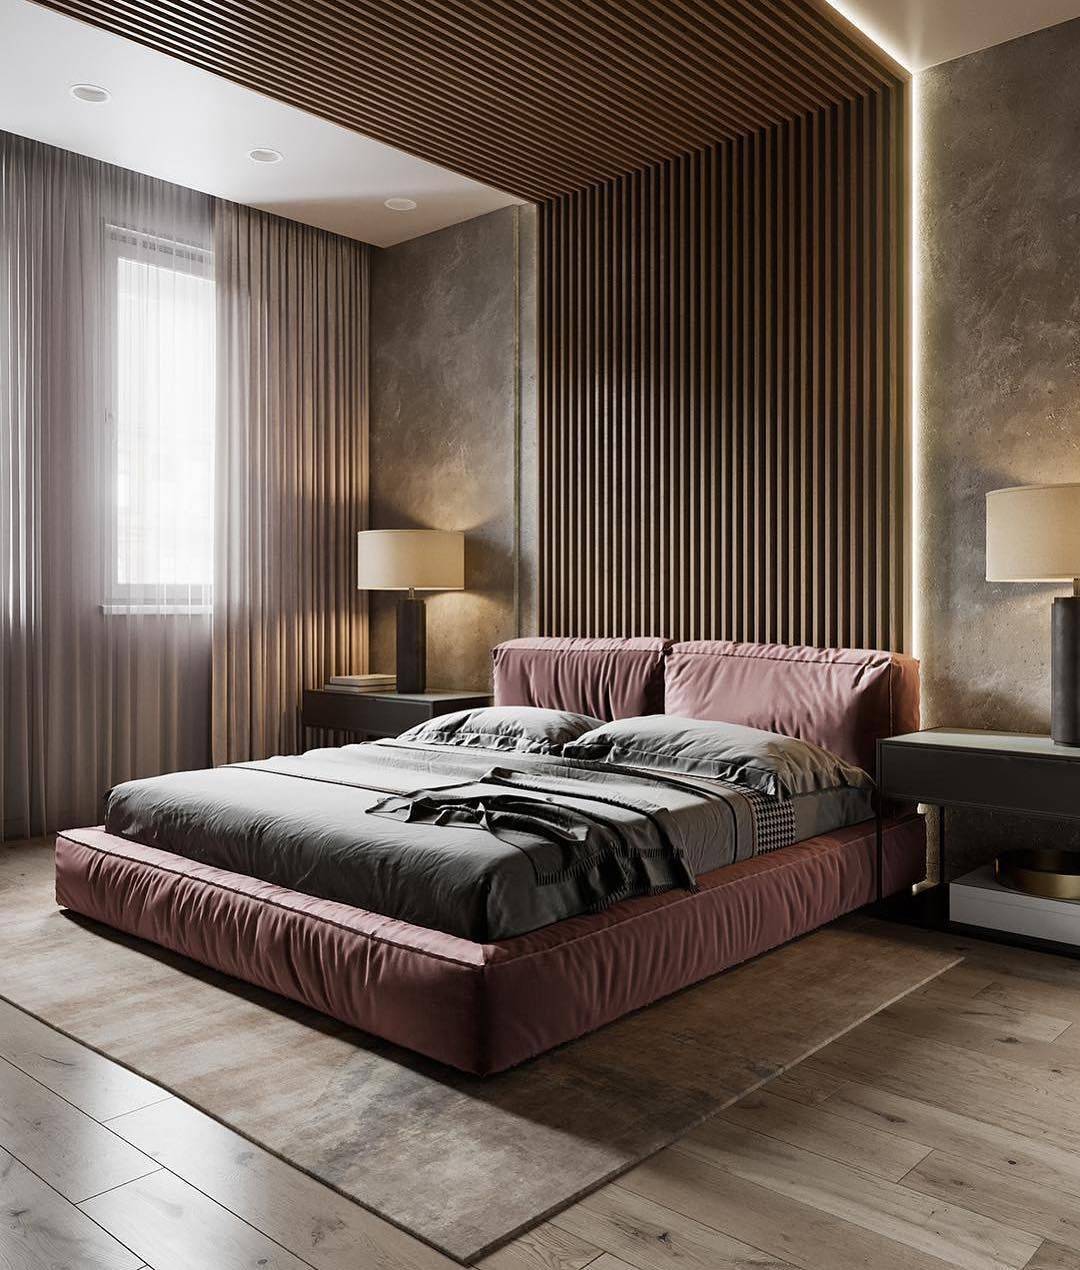 Дизайн спальни: своими руками создаем уникальность